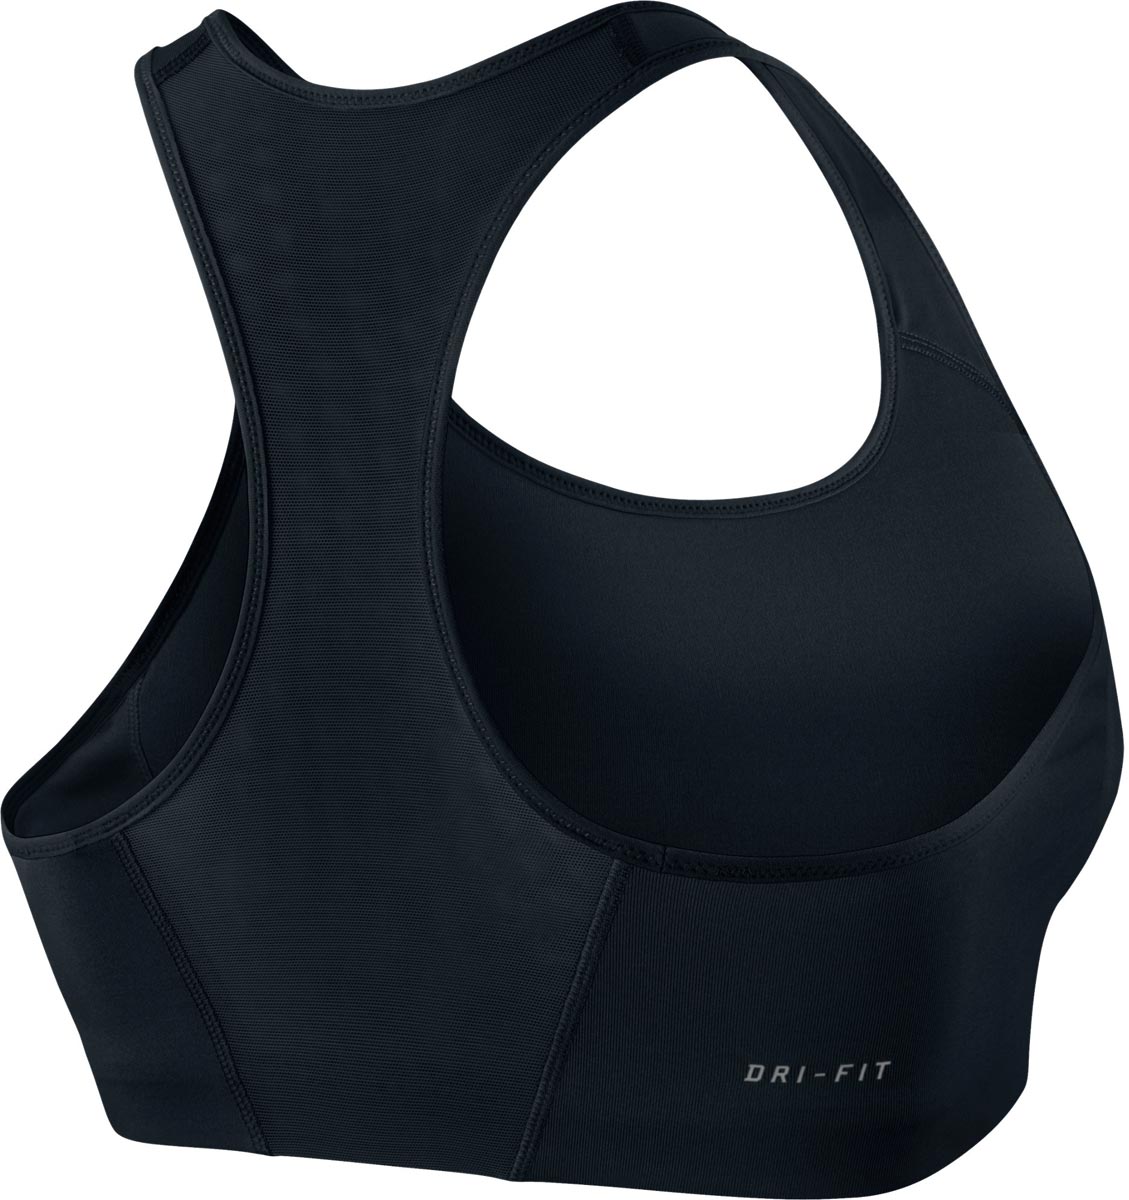 SHAPE SWOOSH BRA 2.0 - Women's sports bra